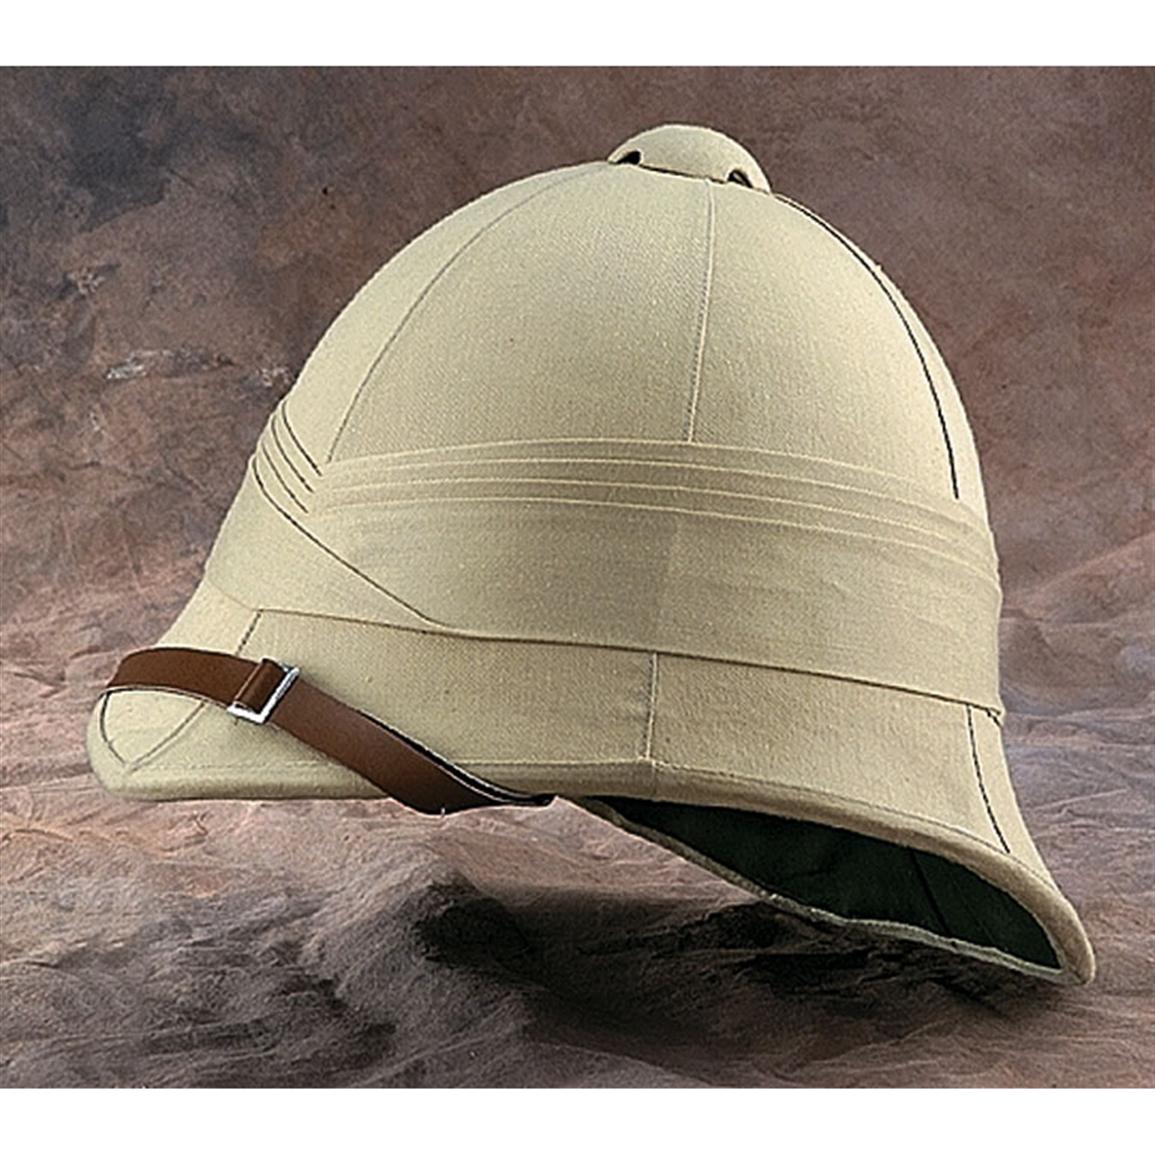 Replica British Tropical Helmet, Khaki - 25770, at Sportsman's Guide